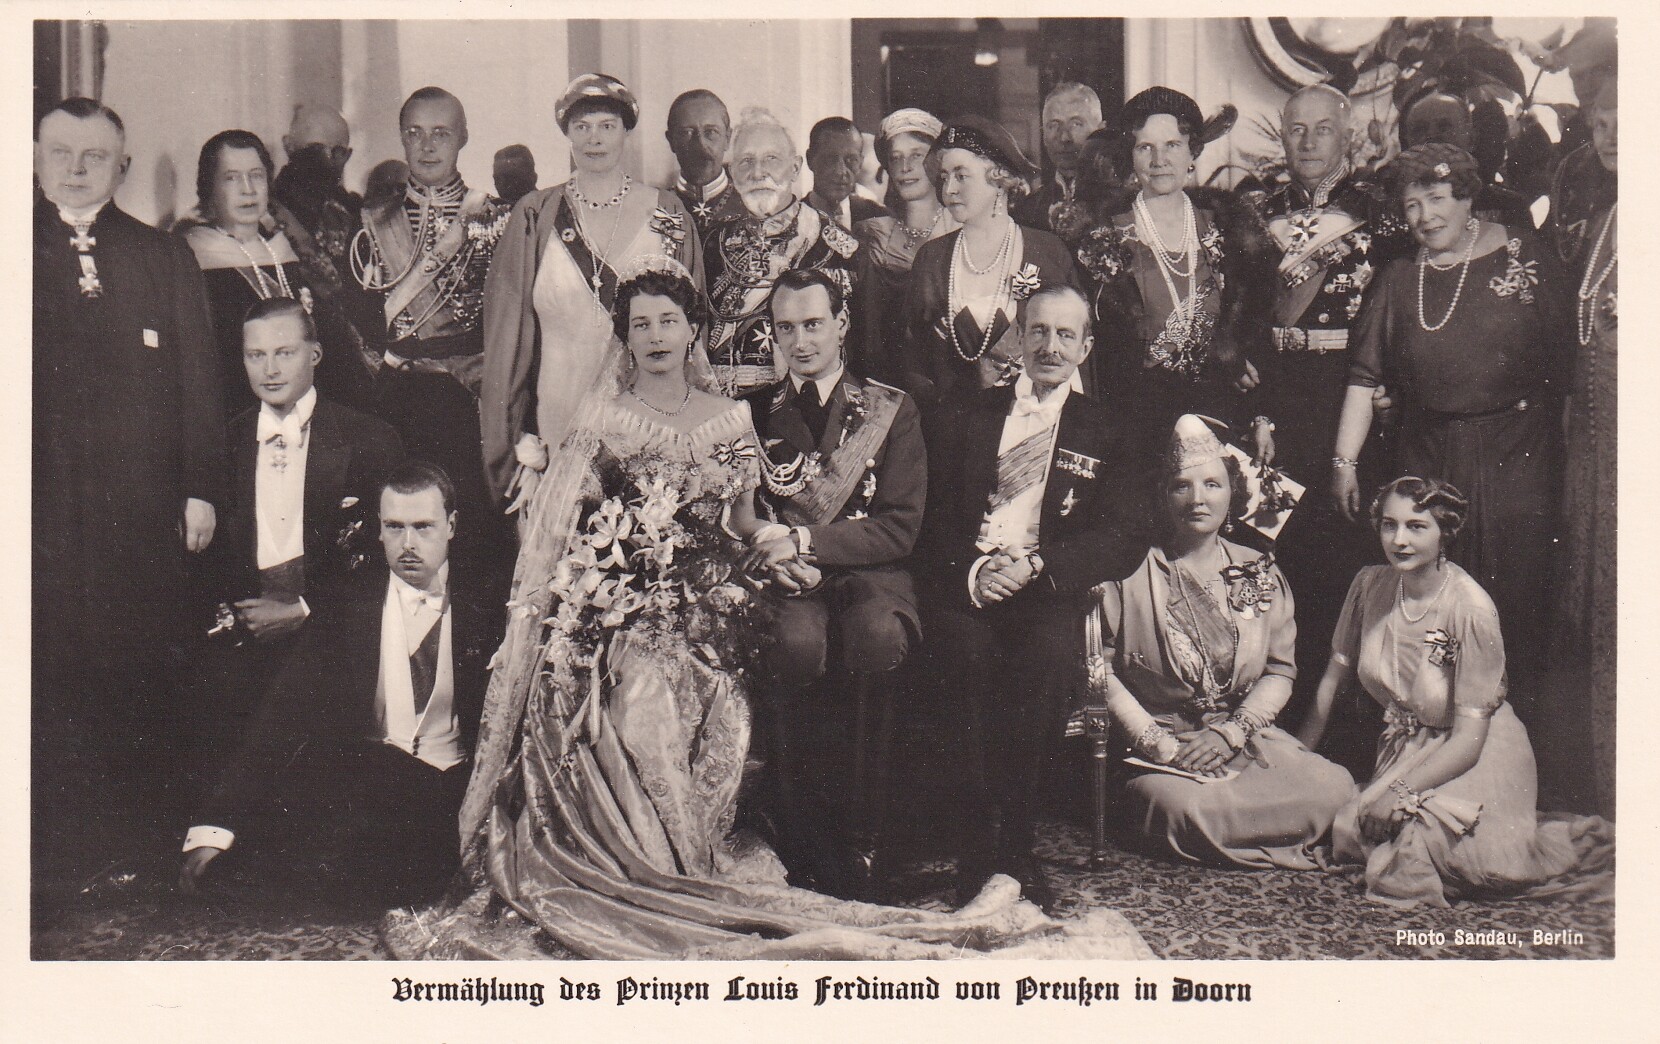 Bildpostkarte mit Gruppenfoto von der Hochzeit des Louis Ferdinand Prinz von Preußen (1907-1994) mit Kira Großfürstin von Russland (1909-1967), 4.5.19 (Schloß Wernigerode GmbH RR-F)